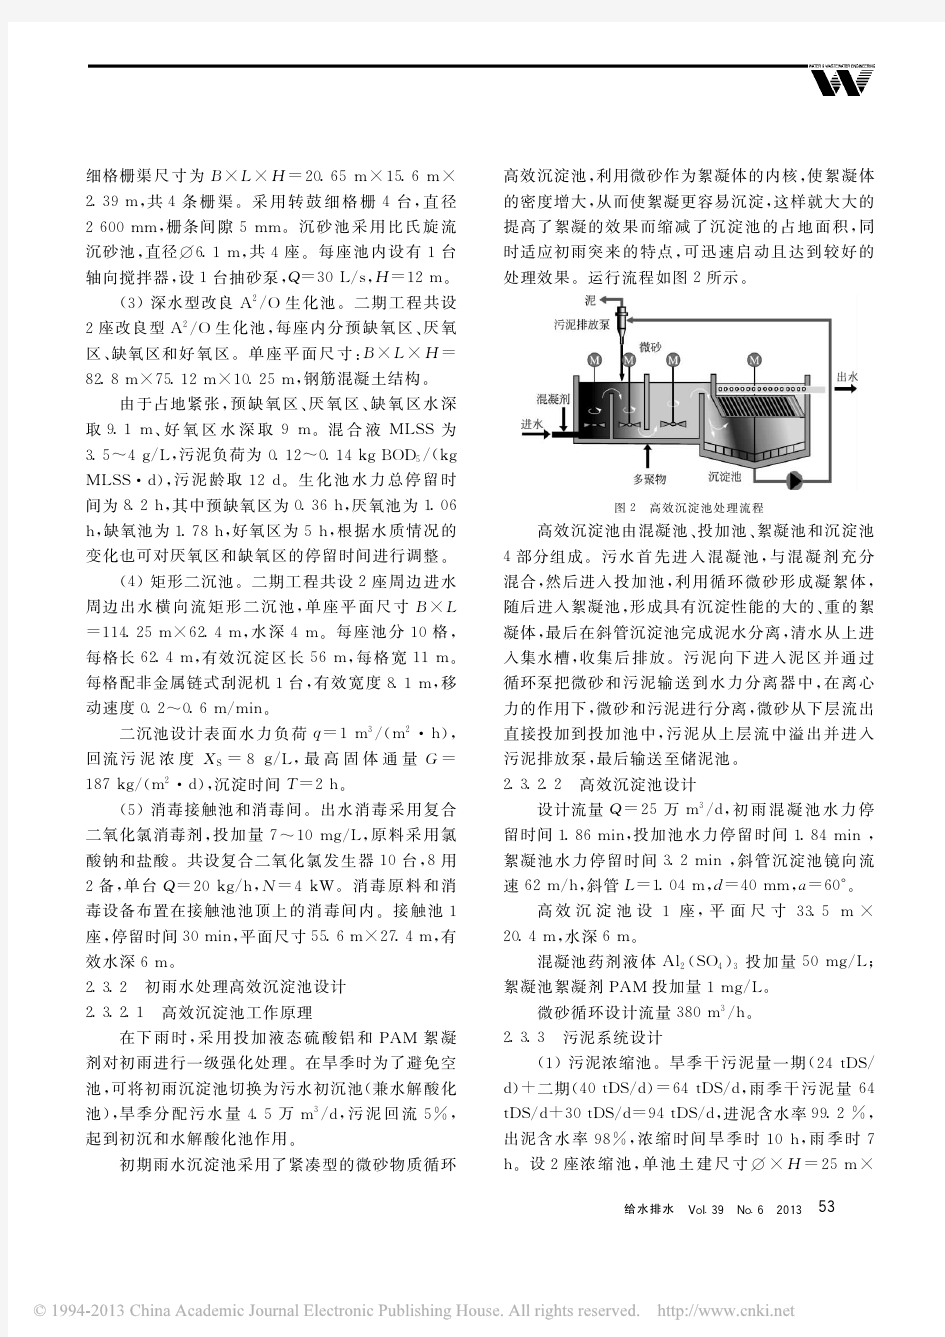 广州沥滘污水处理厂二期工程设计及运行